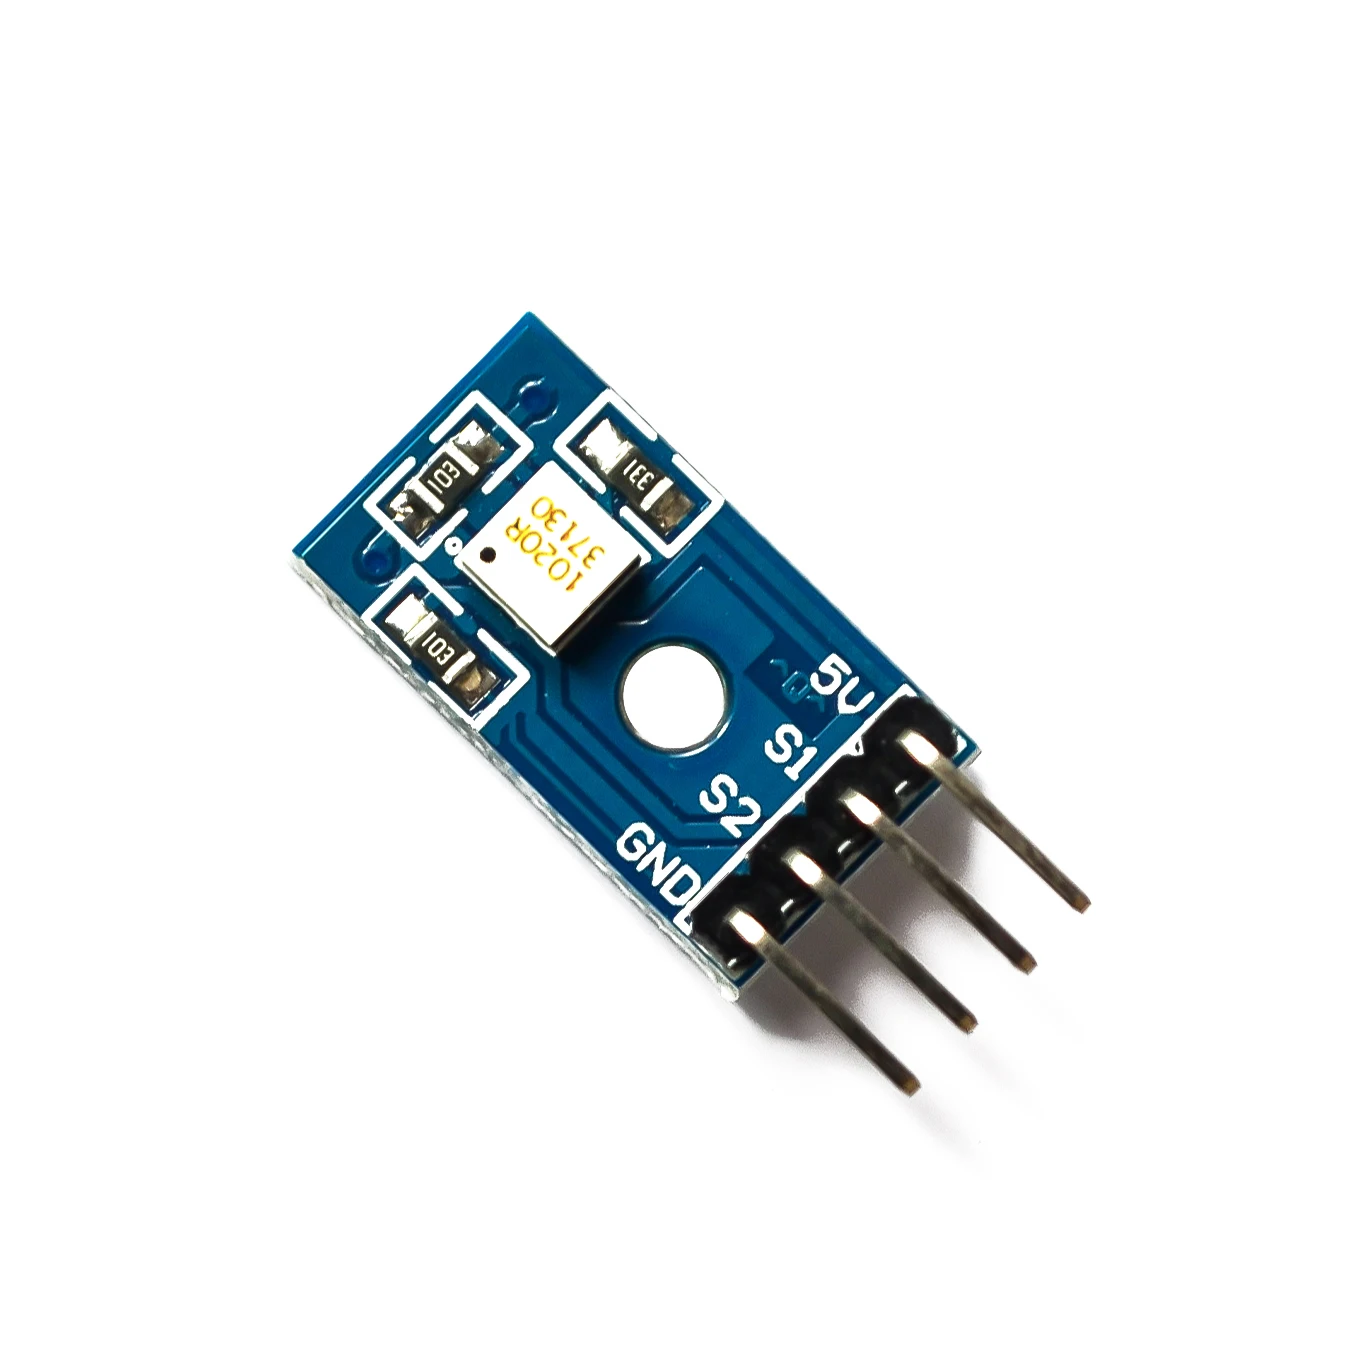 RPI-1031 датчик угла 4DOF отношение HM модуль 4 направления для Arduino